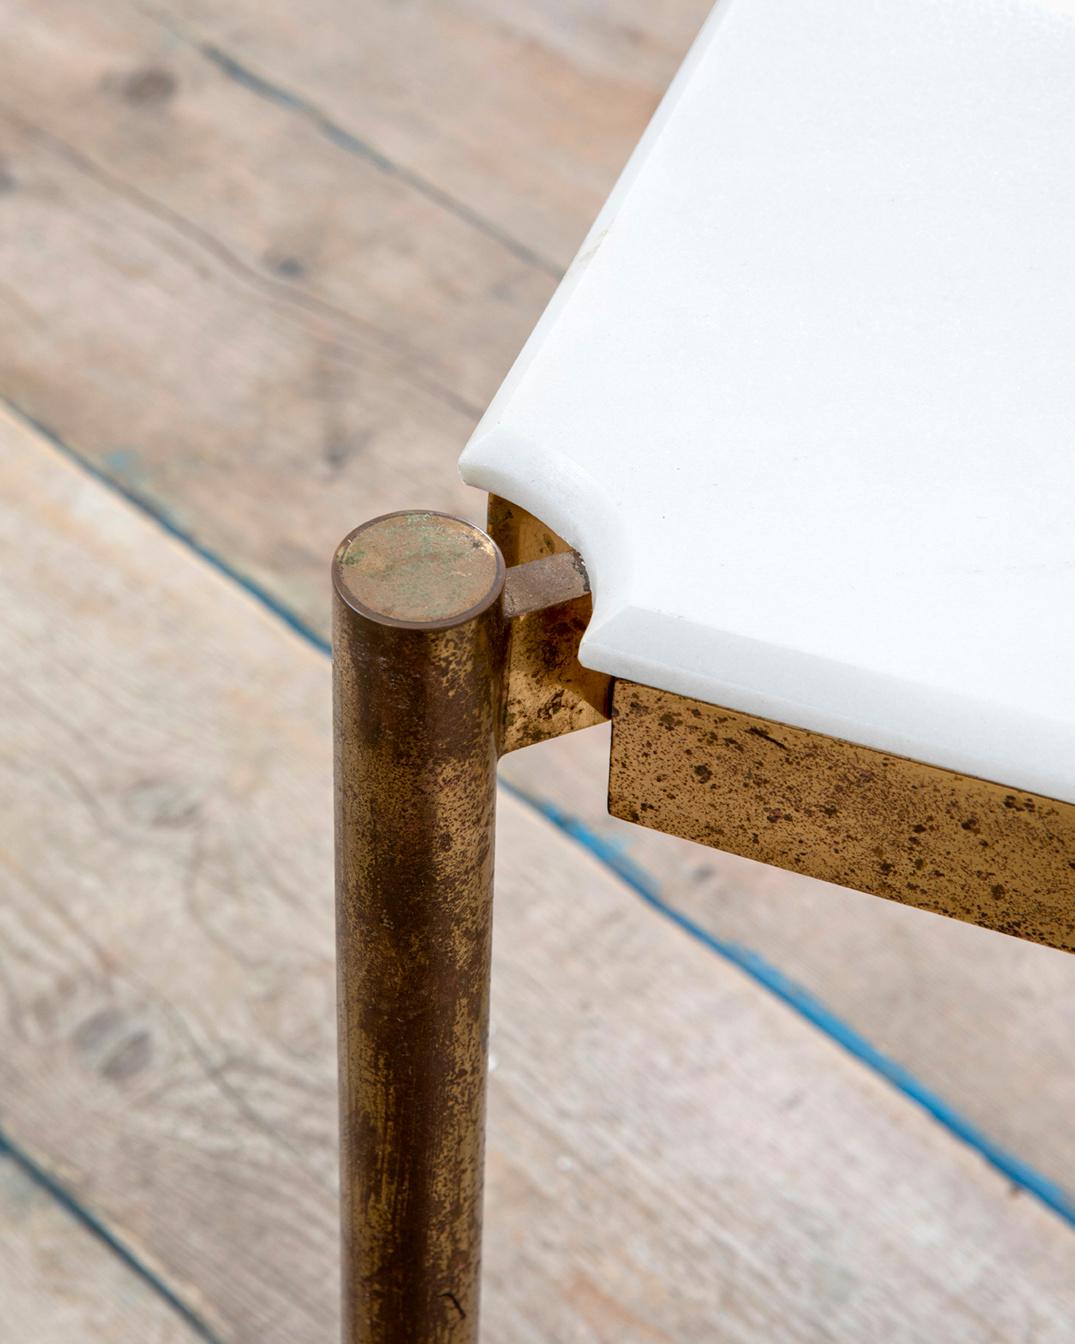 Table basse conçue par Osvaldo Borsani pour Tecno dans les années 50.
La table a une structure en métal et un plateau en marbre. 
Bon état, patine du temps dans la structure métallique et dans le plateau en marbre, entièrement d'origine.
La partie